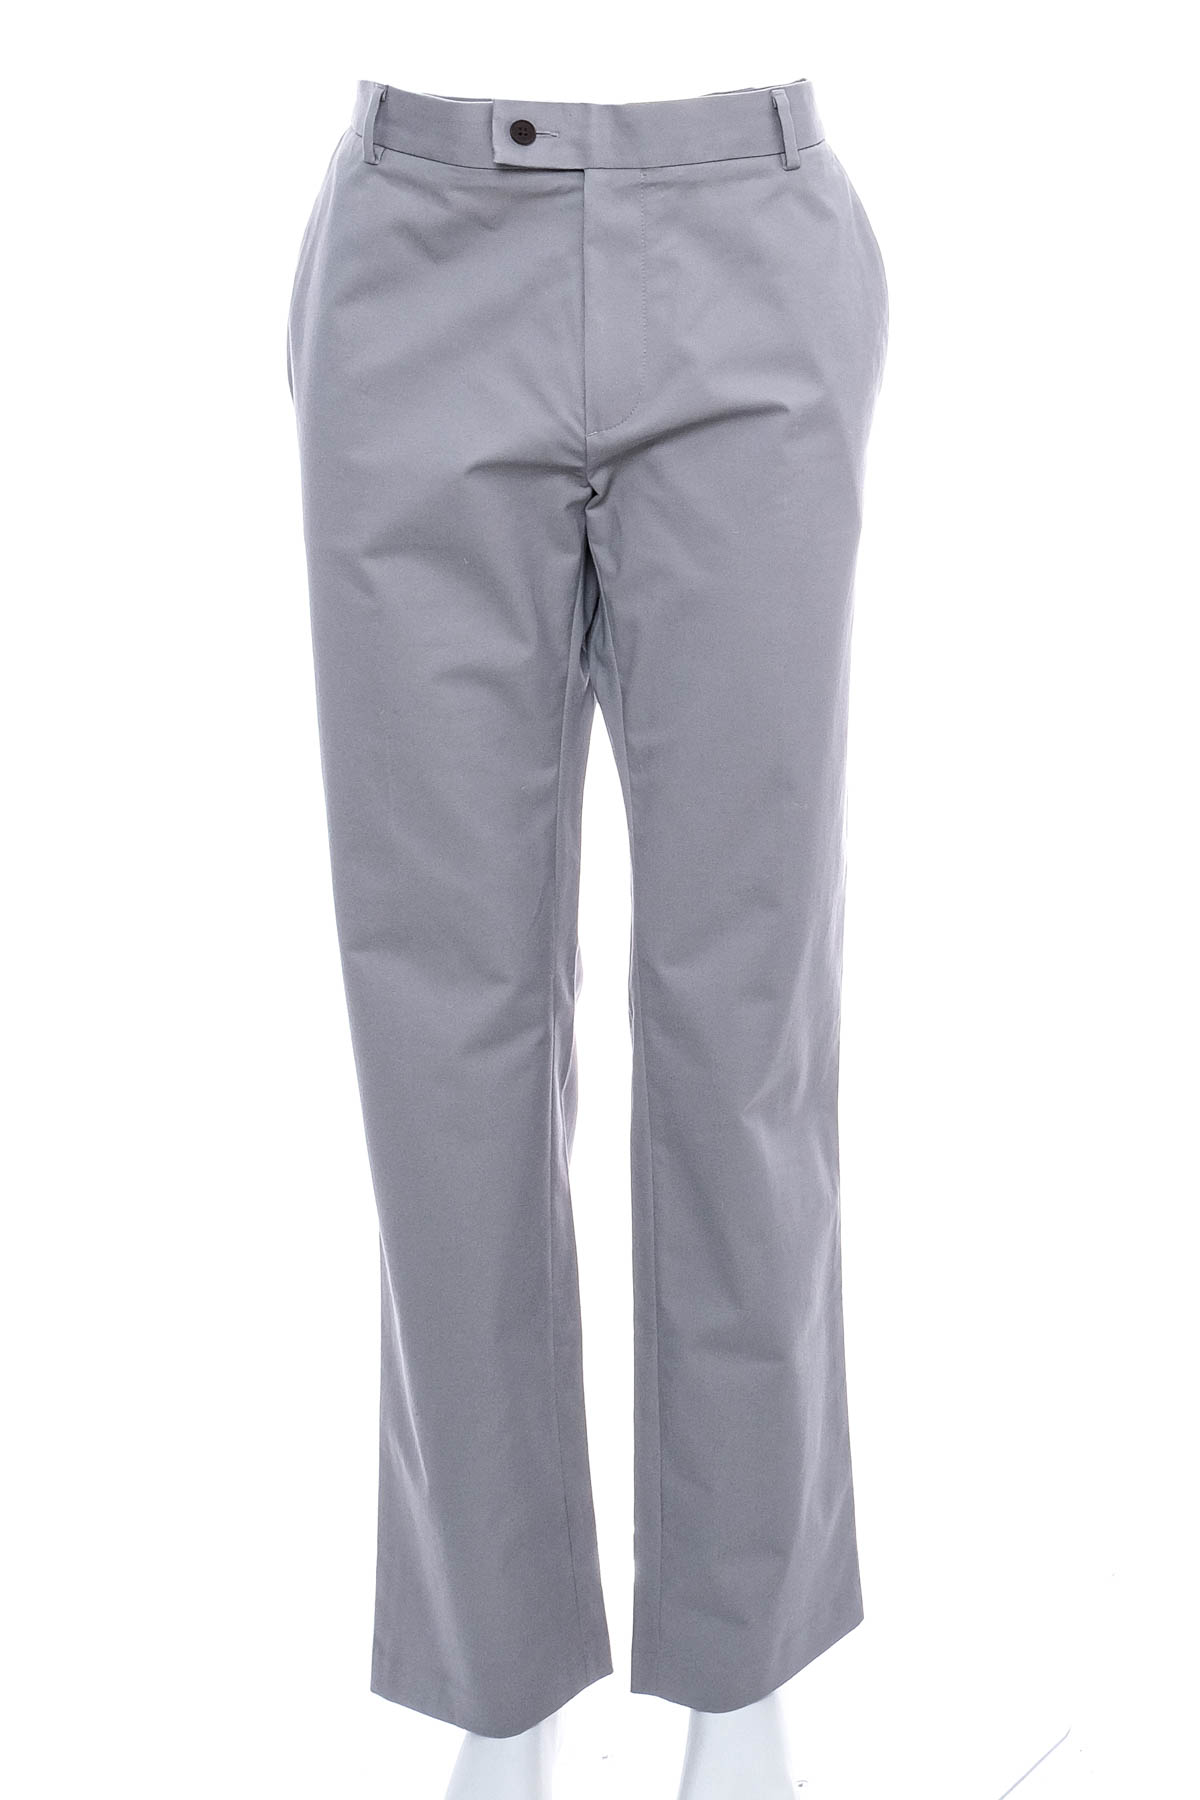 Men's trousers - CHARLES TYRWHITT - 0